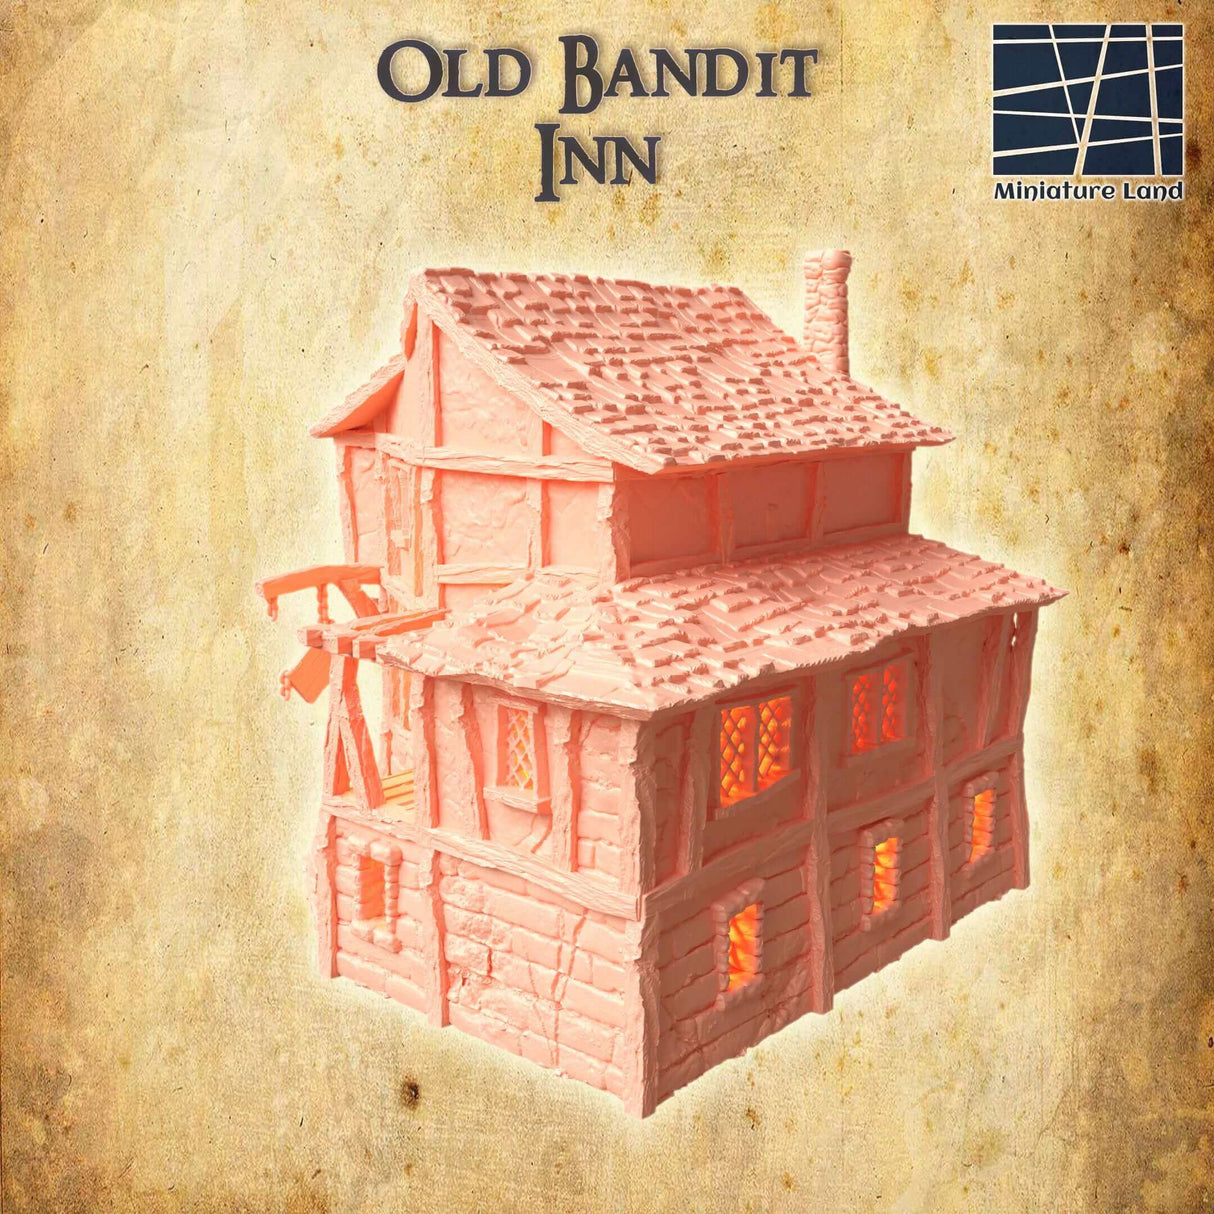 Altes Bandit Inn im 28 MM Maßstab für Tabletop-Spiele